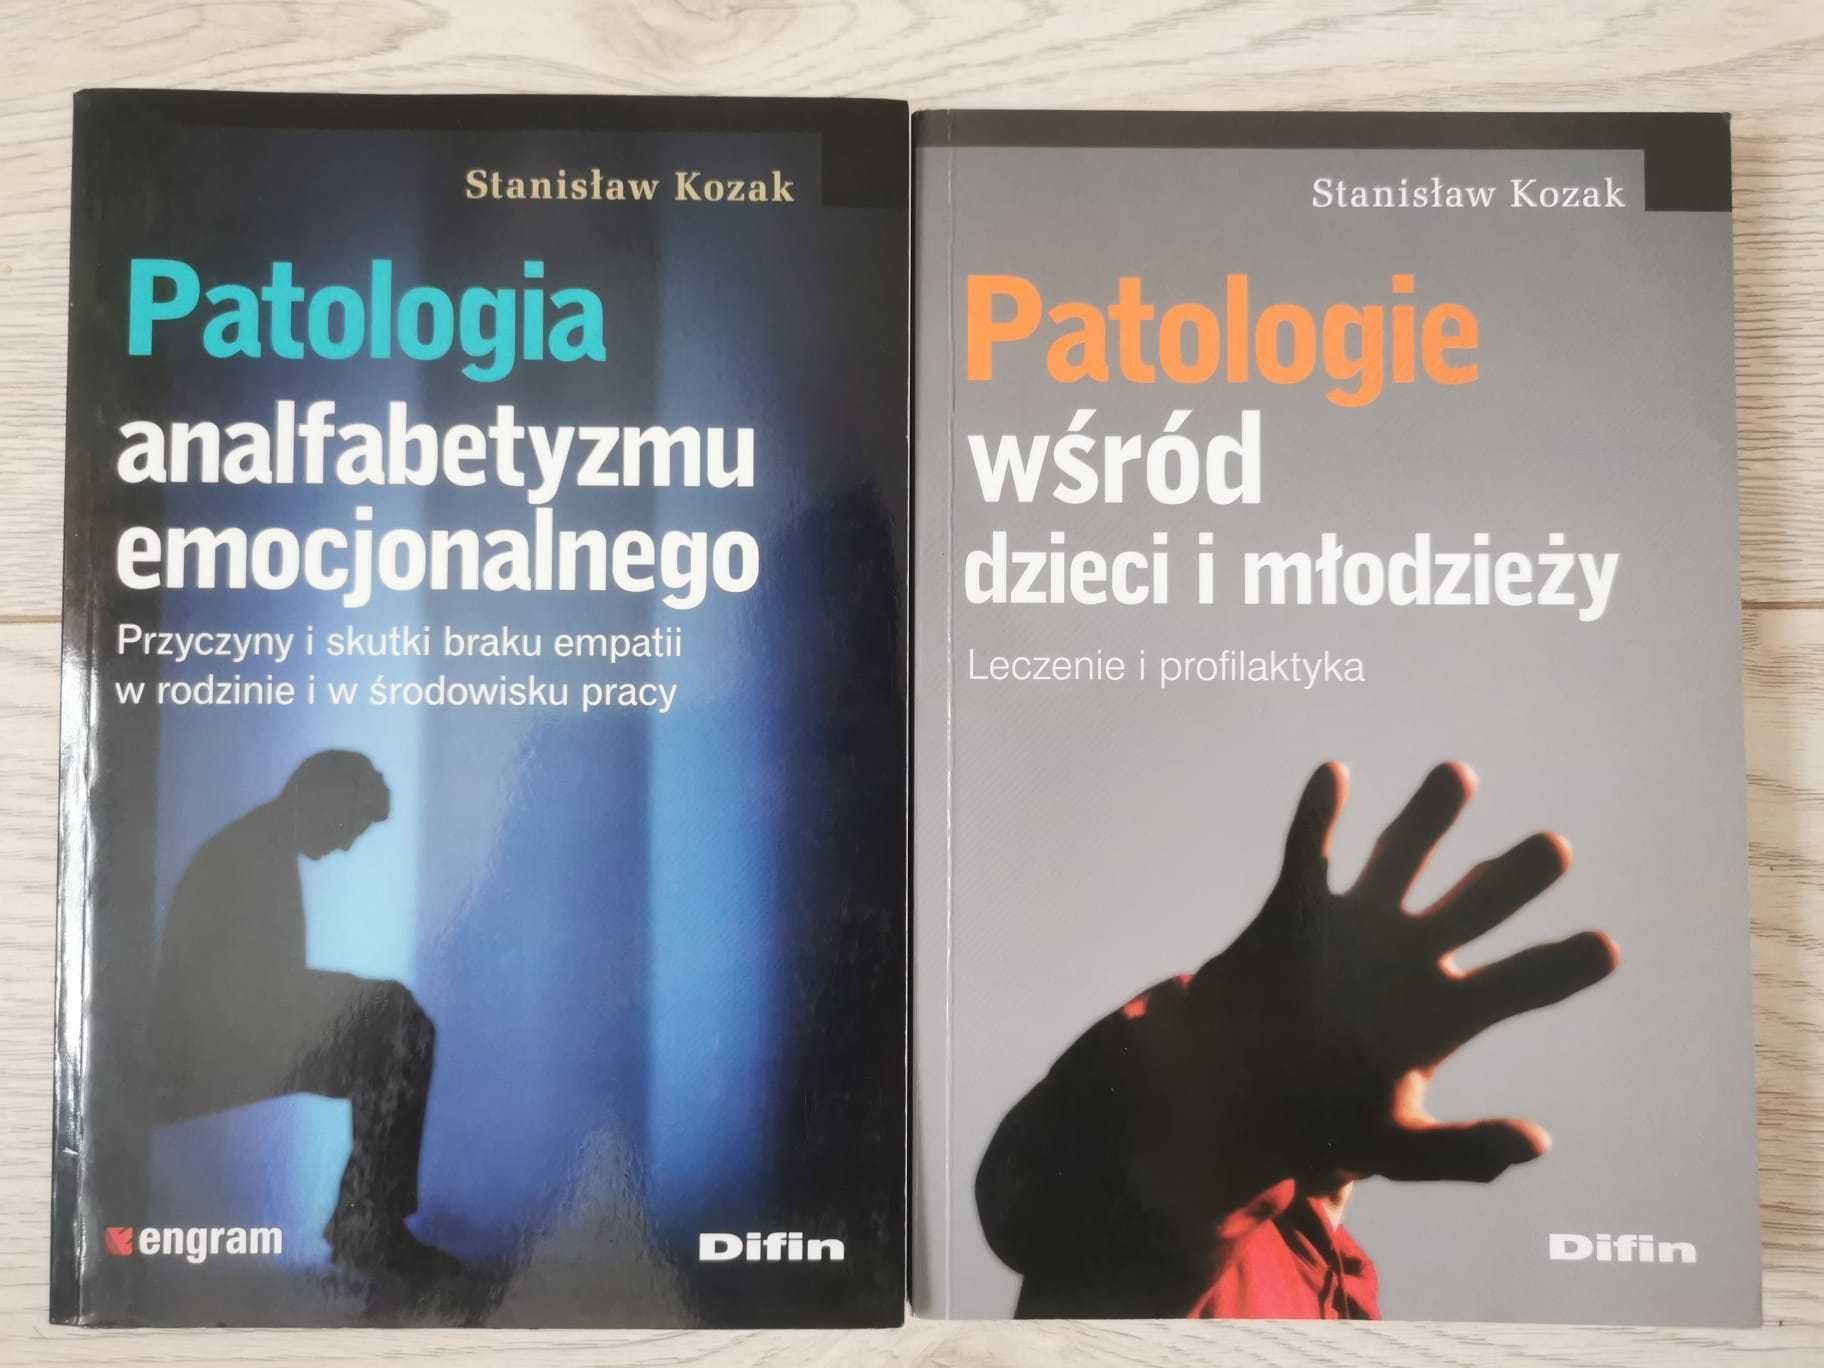 Patologia analfabetyzmu emocjonalnego + Patologie wśród d.  - S. Kozak